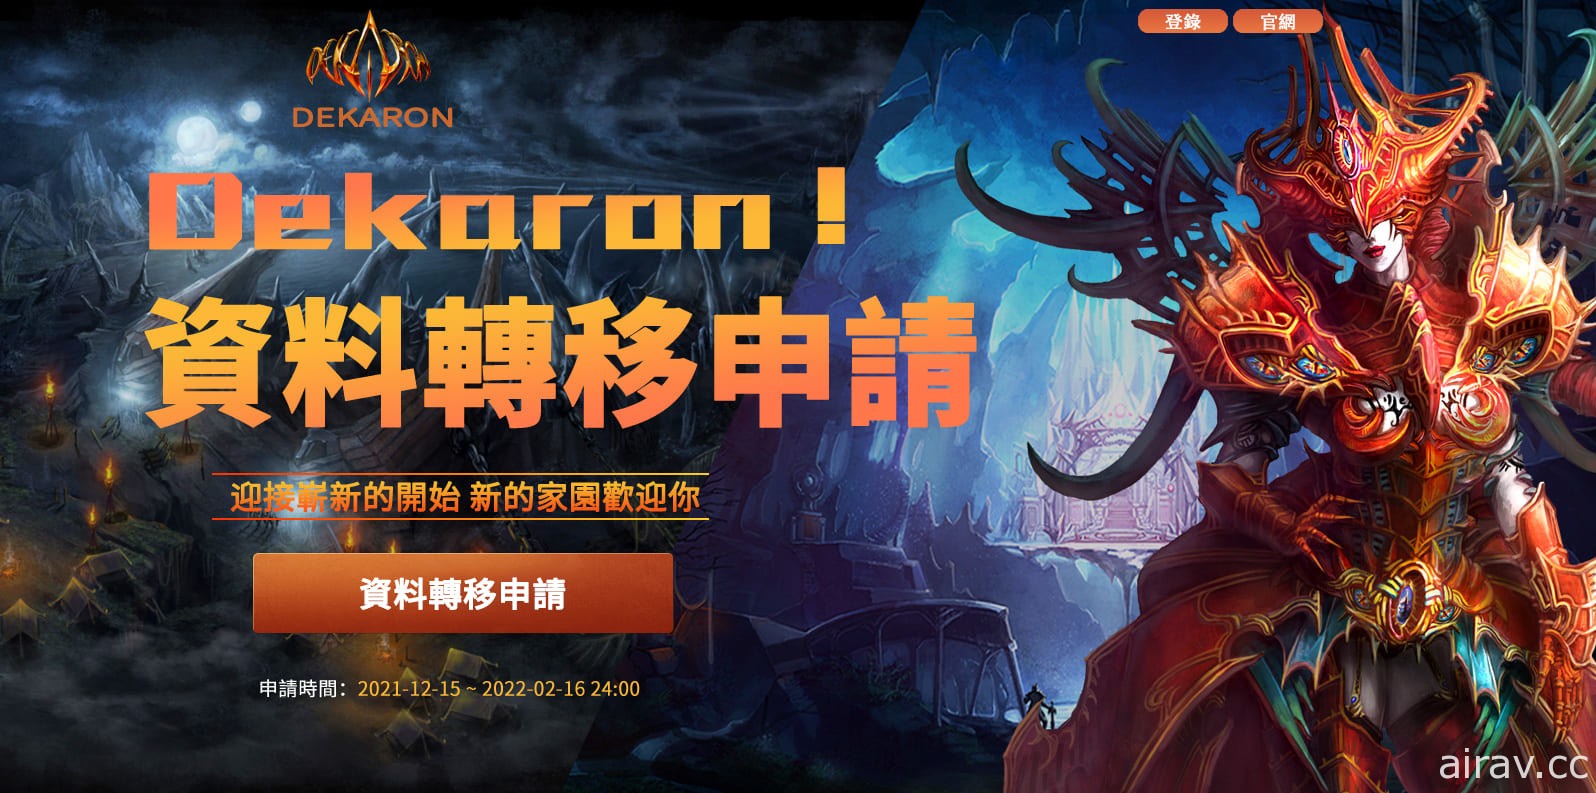 鬥遊在線取得《Dekaron Online》台灣代理權 今起開放資料轉移